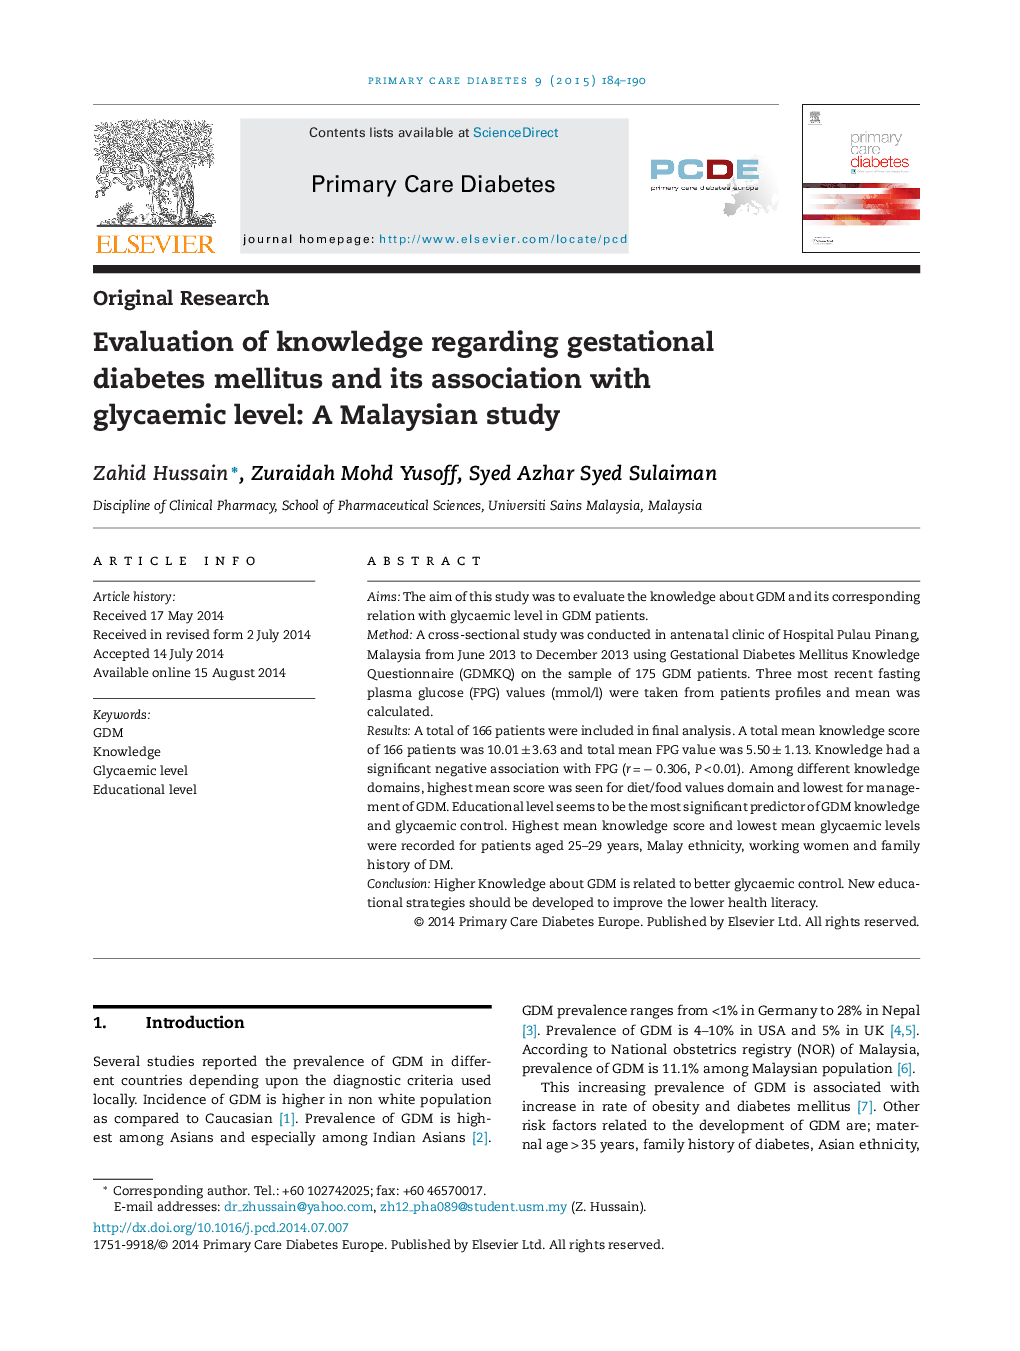 تحقیقات اصلی ارزیابی دانش در مورد دیابت بارداری و ارتباط آن با سطح گلیسمی: یک مطالعه مالزیایی 